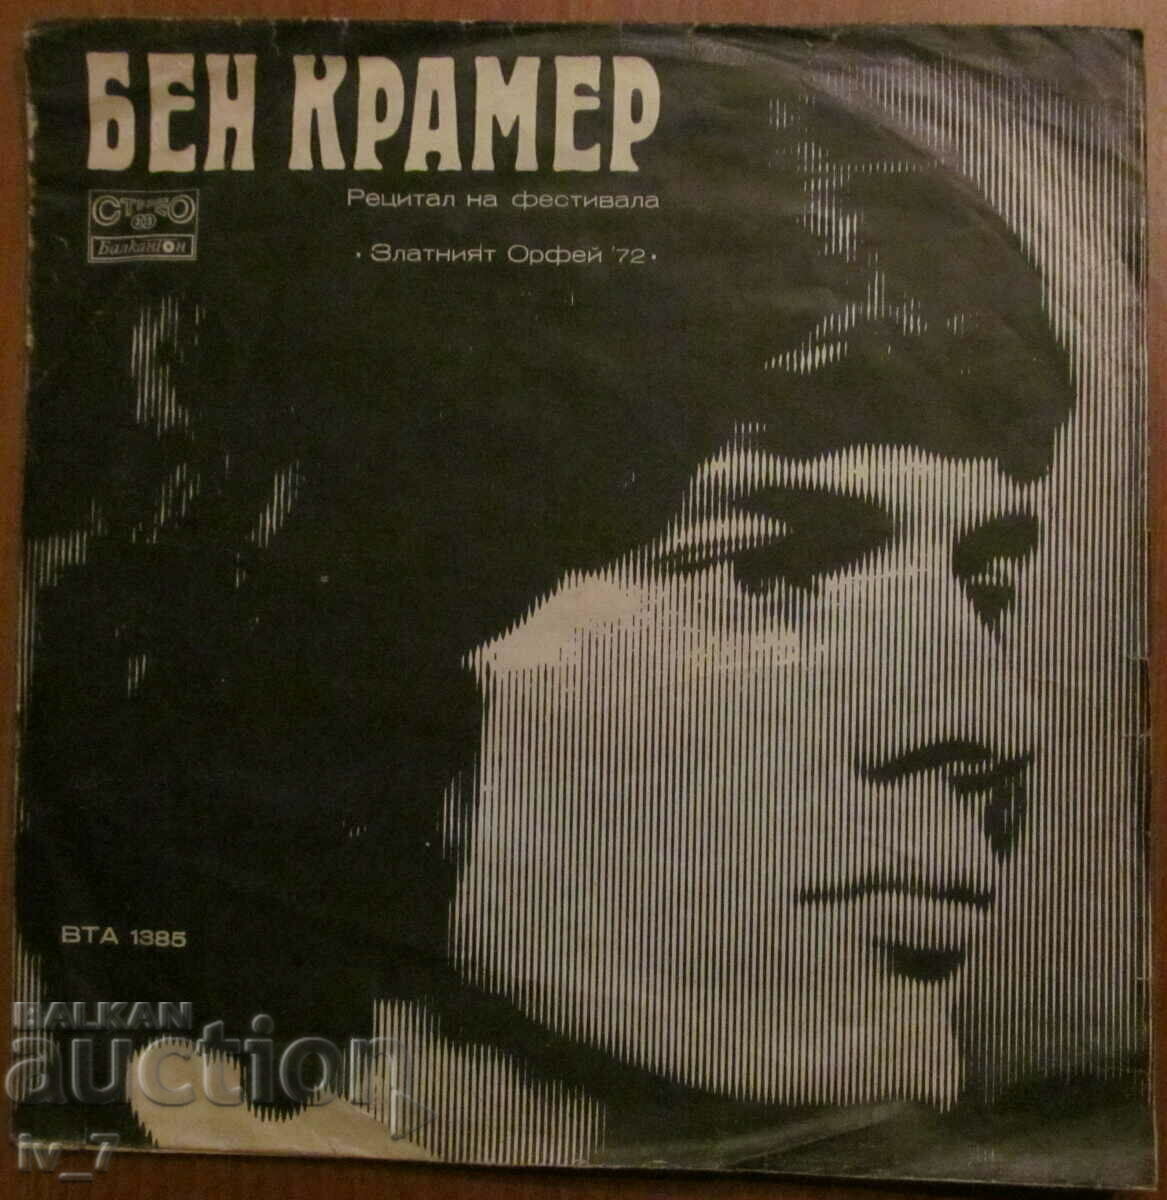 RECORD-Ben Kramer, Dubrovnik. Troubadours, large format